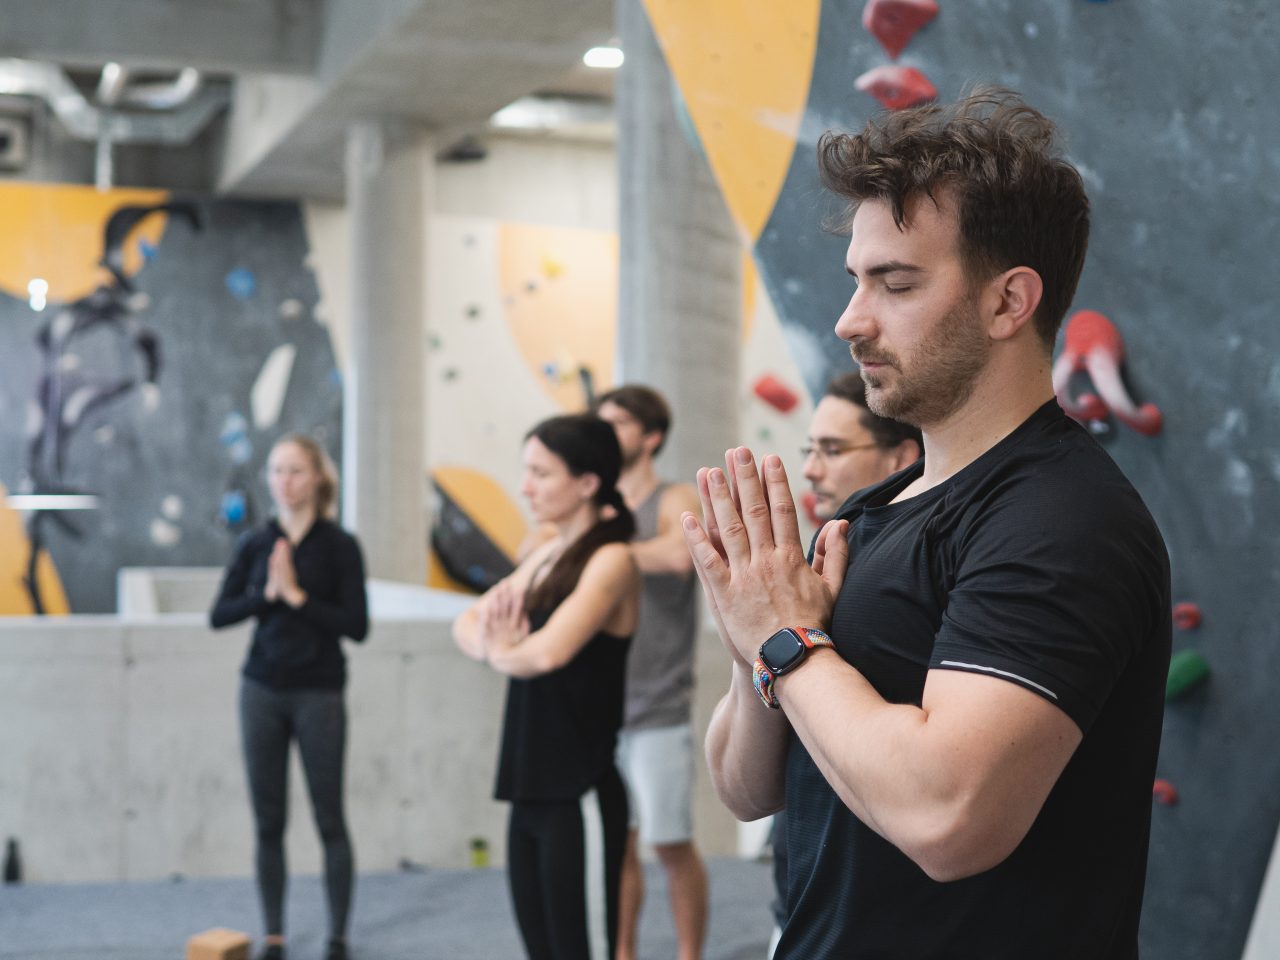 Gruppe macht Yoga vor Boulderwand